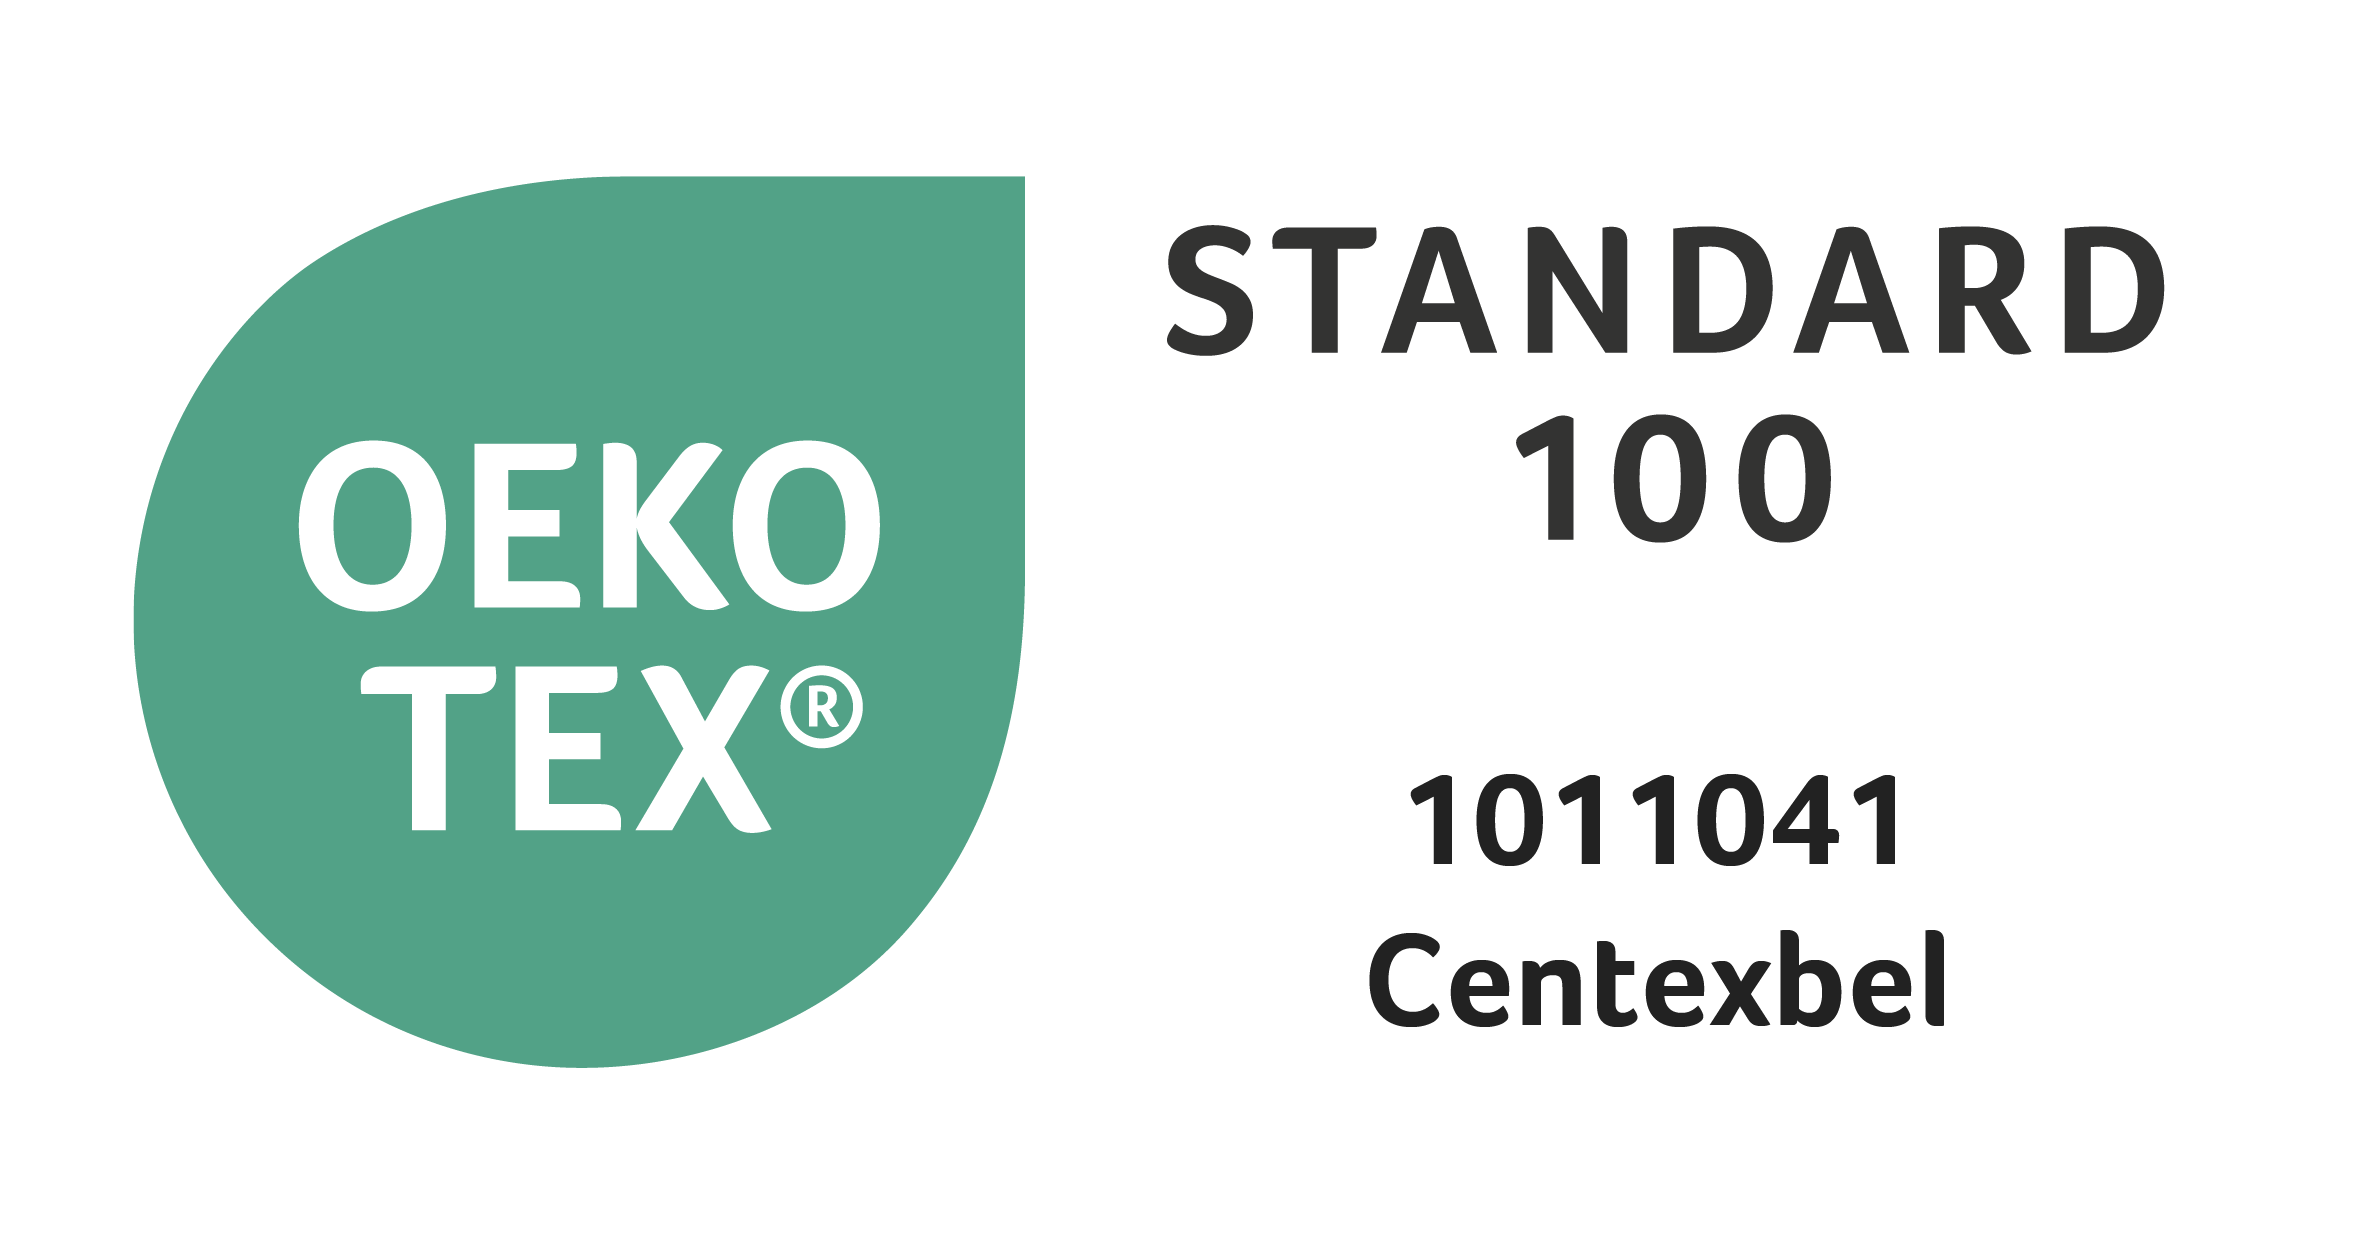 Getest op schadelijke stoffen volgens Oeko-Tex® Standard 100 (1011041/Centexbel) / Stof